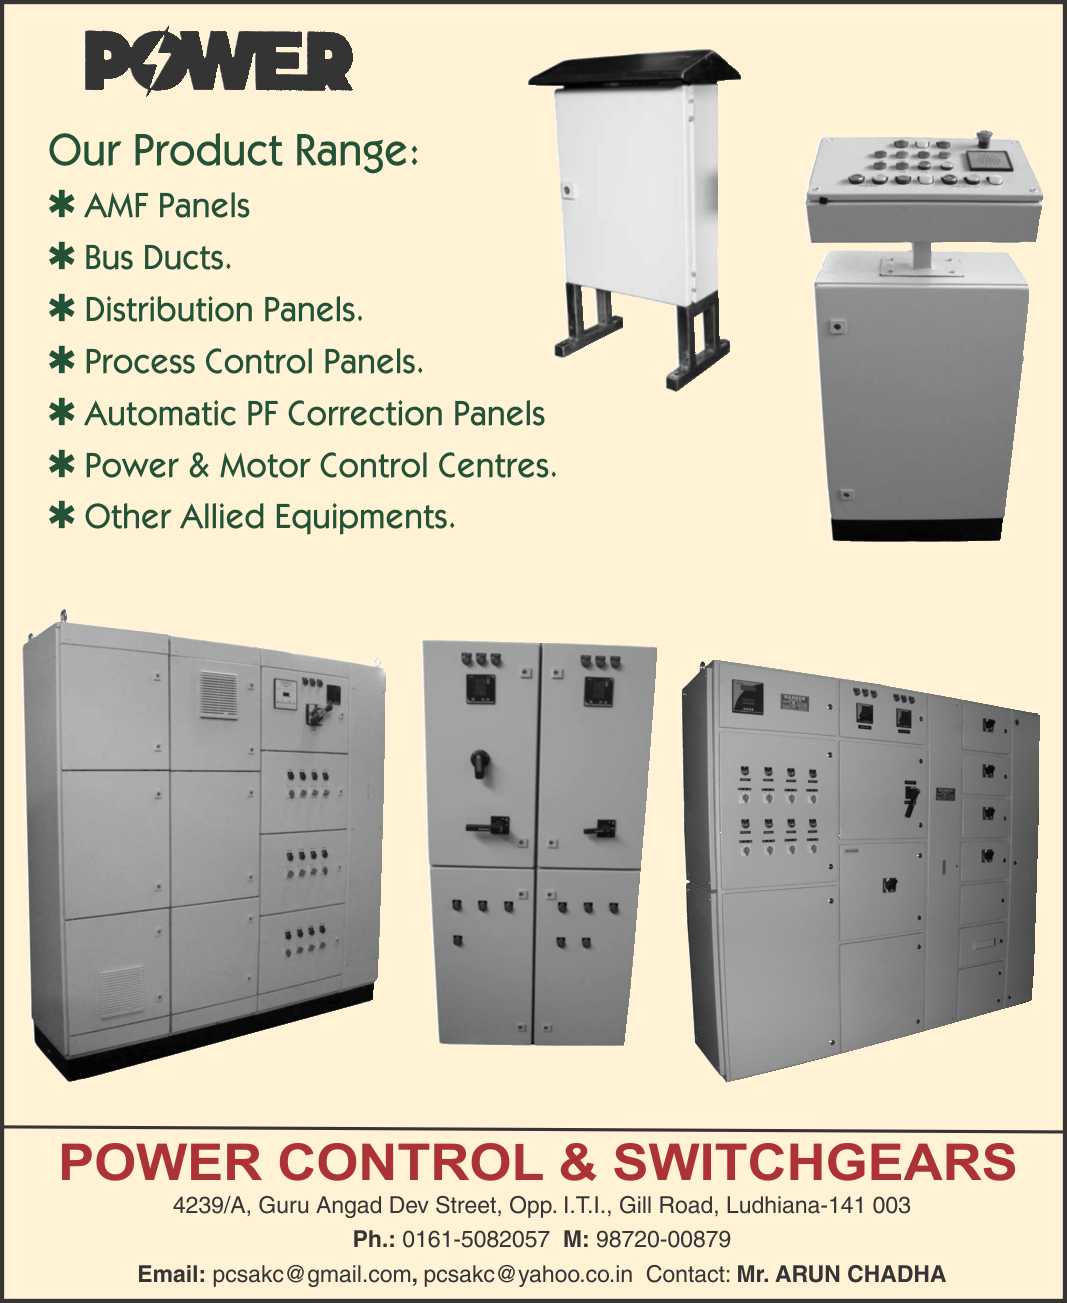 Power Control & Switchgears